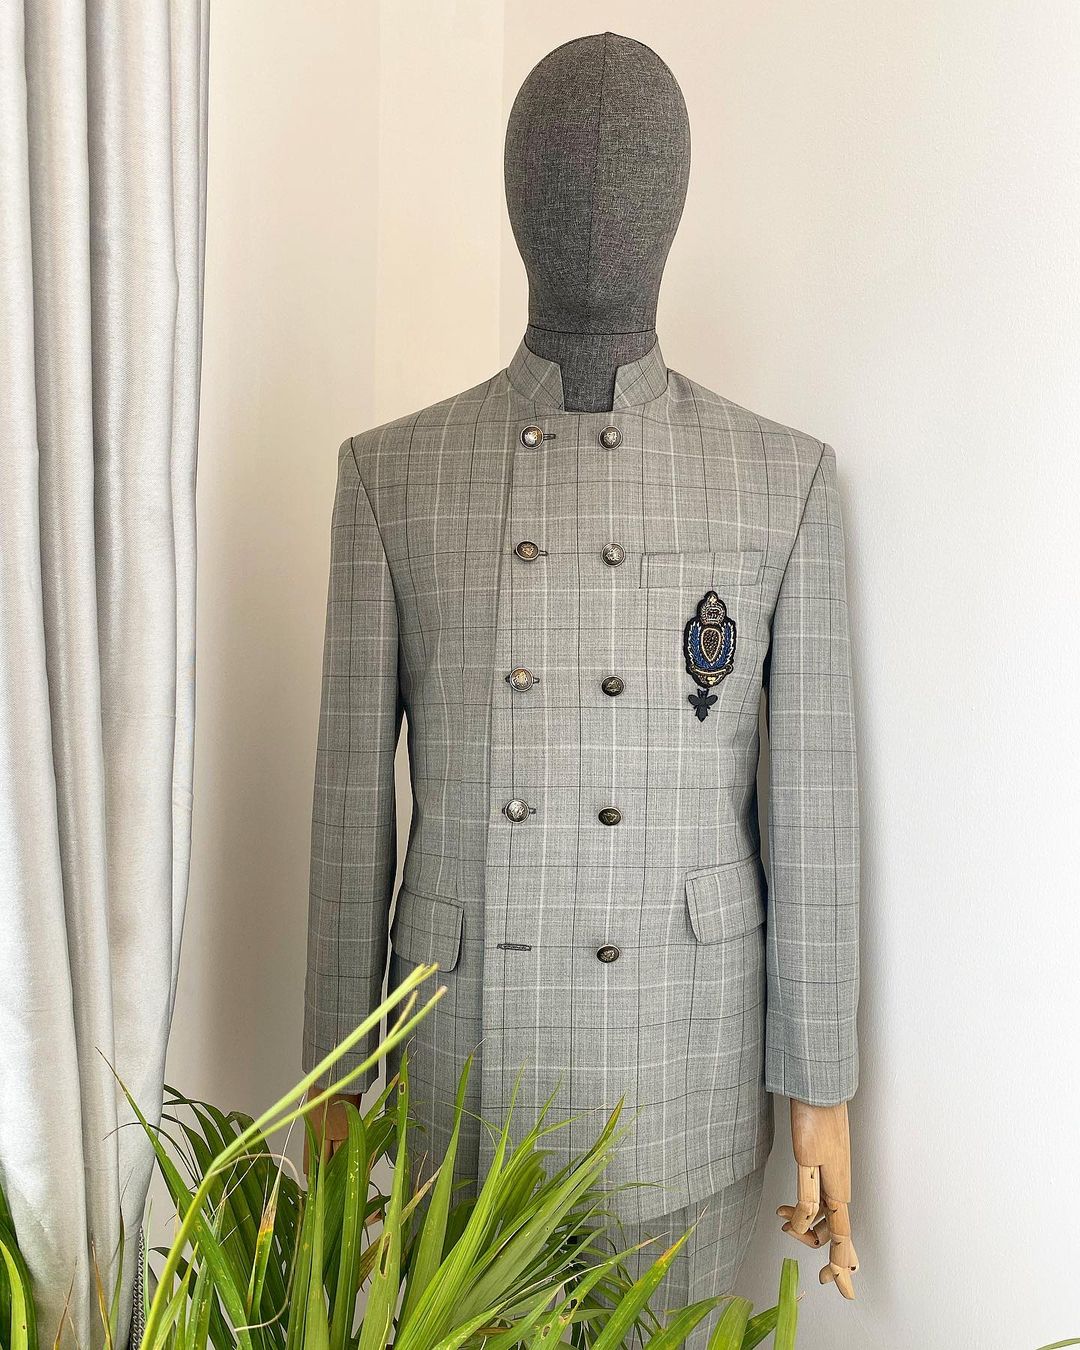 Dejiandkola - A Reloaded Pin Stripe “French” safari suit